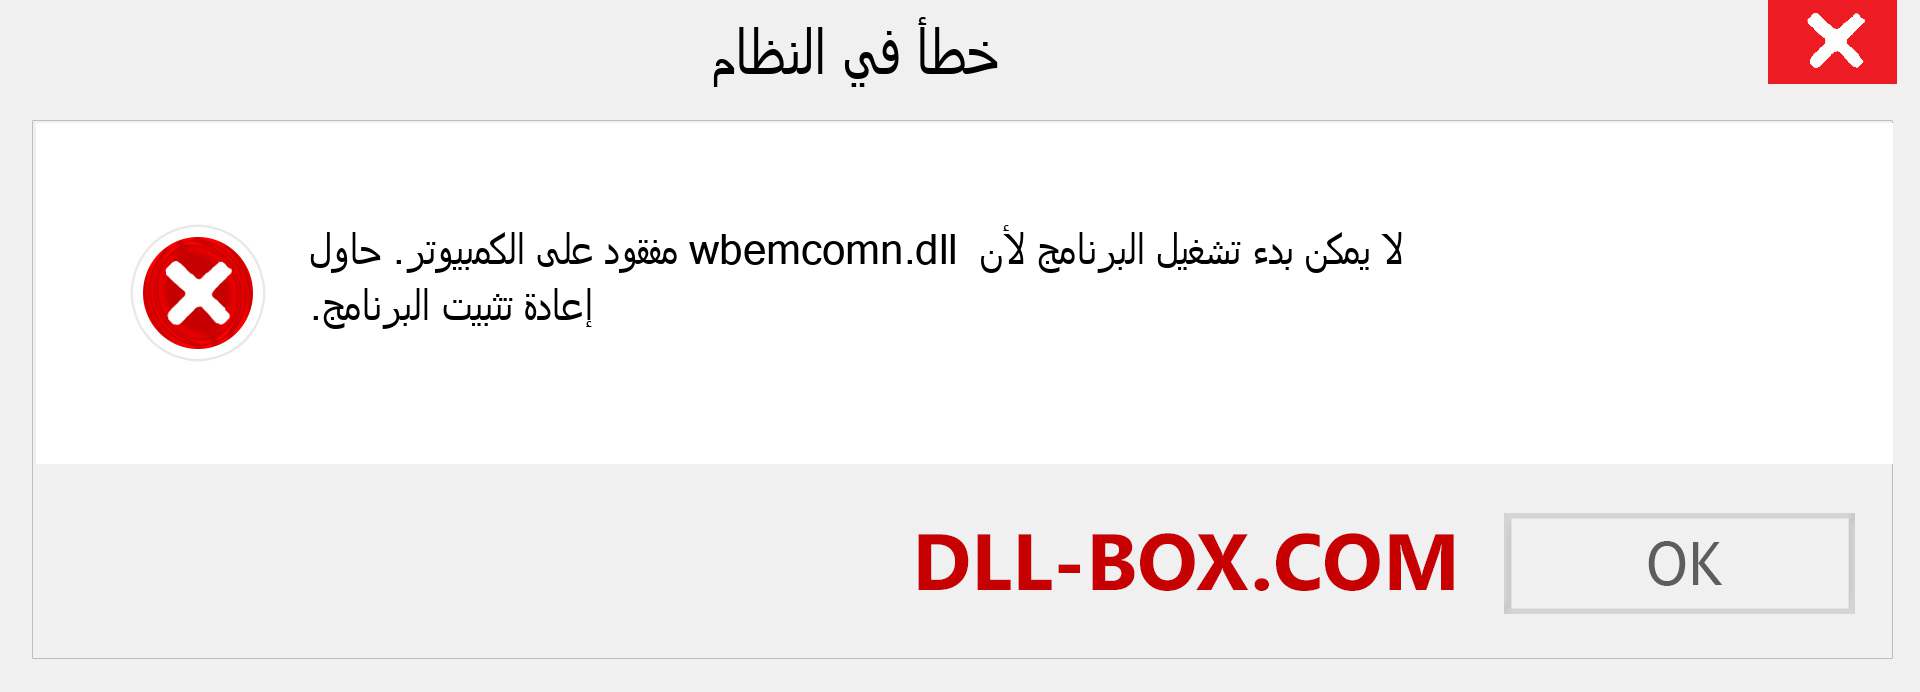 ملف wbemcomn.dll مفقود ؟. التنزيل لنظام التشغيل Windows 7 و 8 و 10 - إصلاح خطأ wbemcomn dll المفقود على Windows والصور والصور